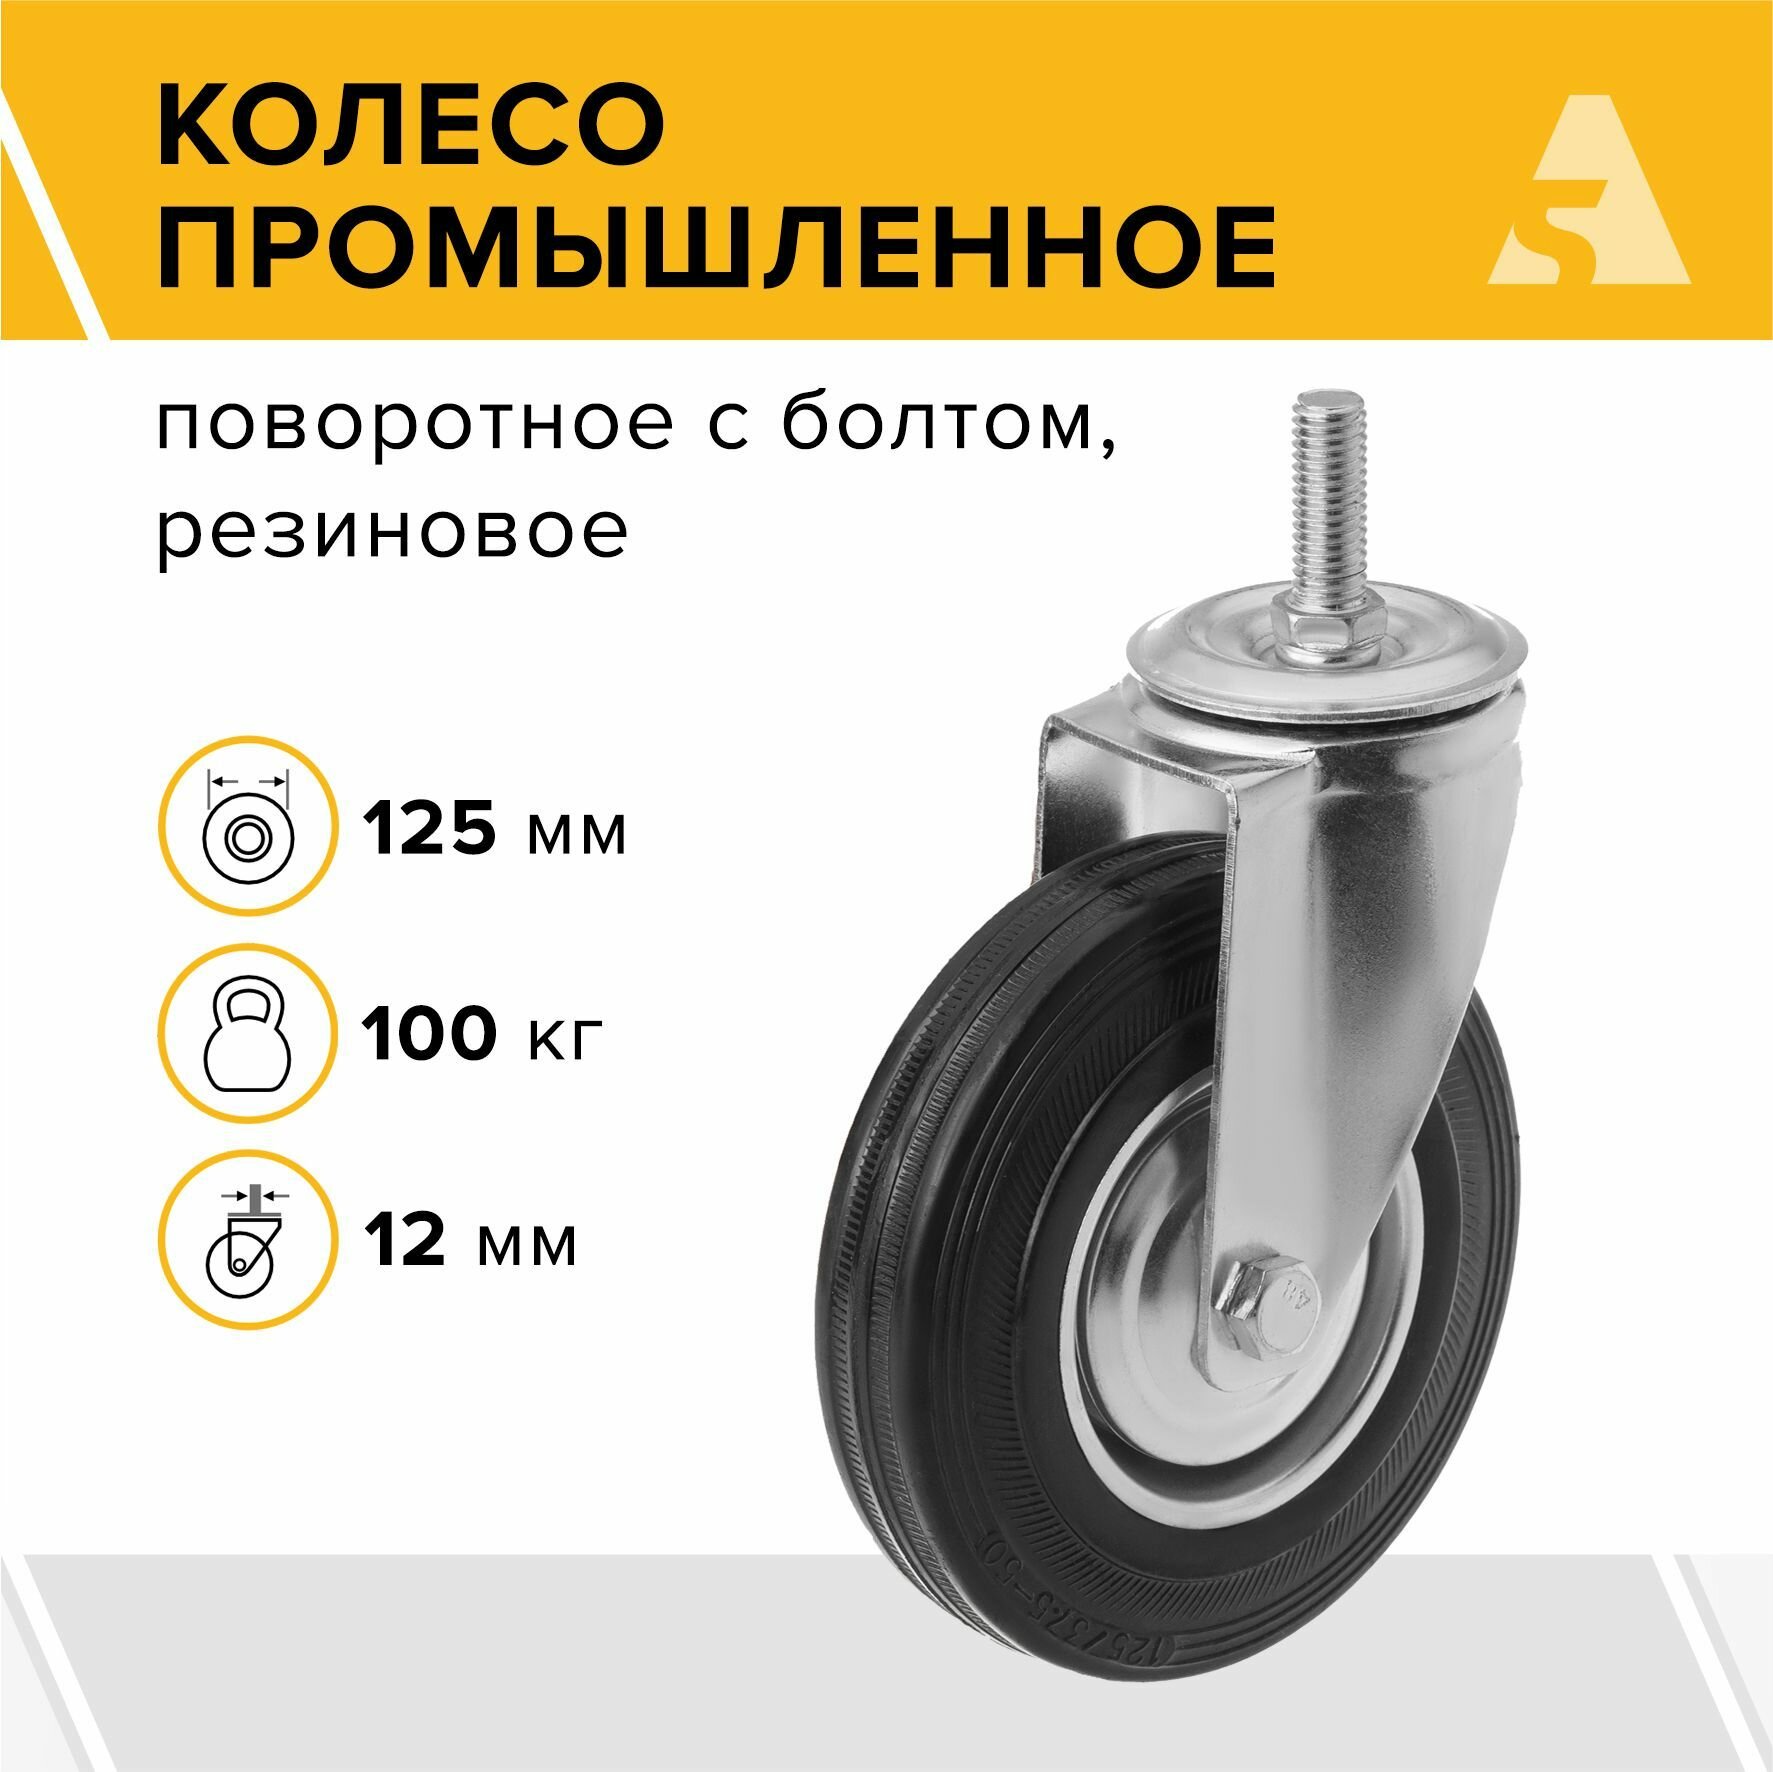 Колесо промышленное поворотное с болтовым креплением SCt 55, 125 мм, 100 кг, резина